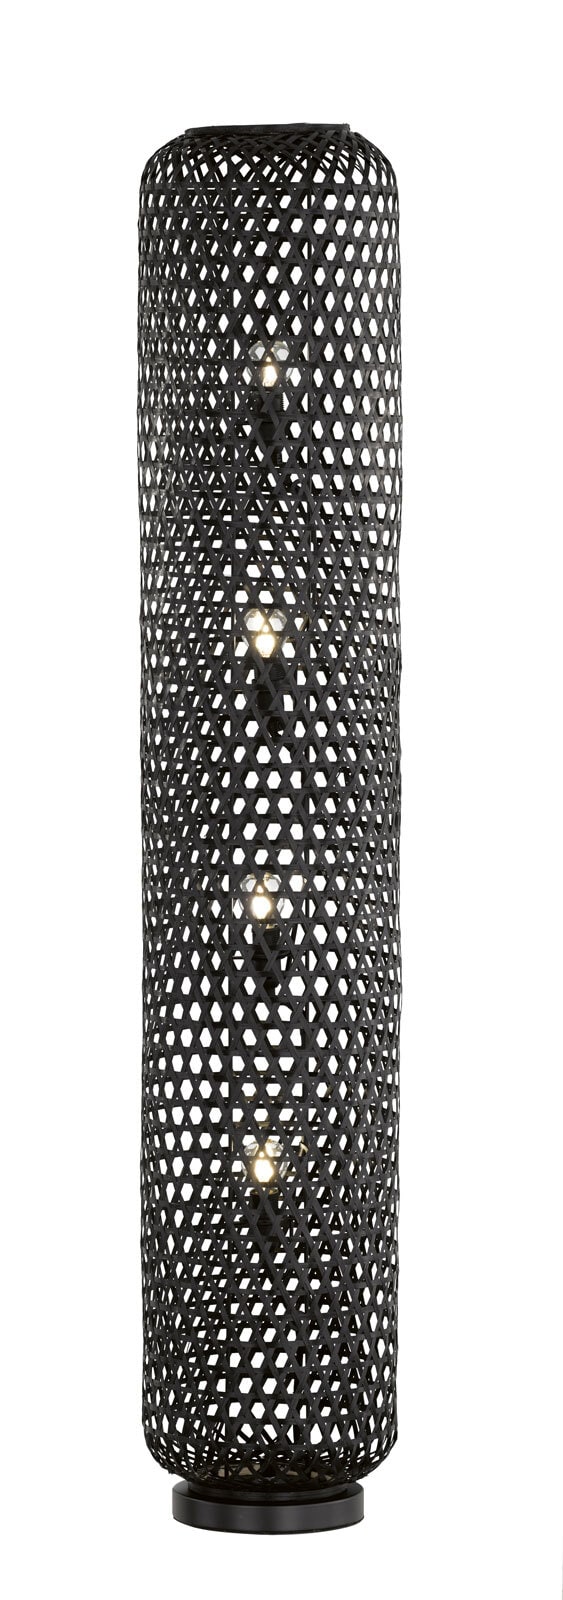 SCHÖNER WOHNEN-Kollektion Stehlampe CALLA 130 cm schwarz